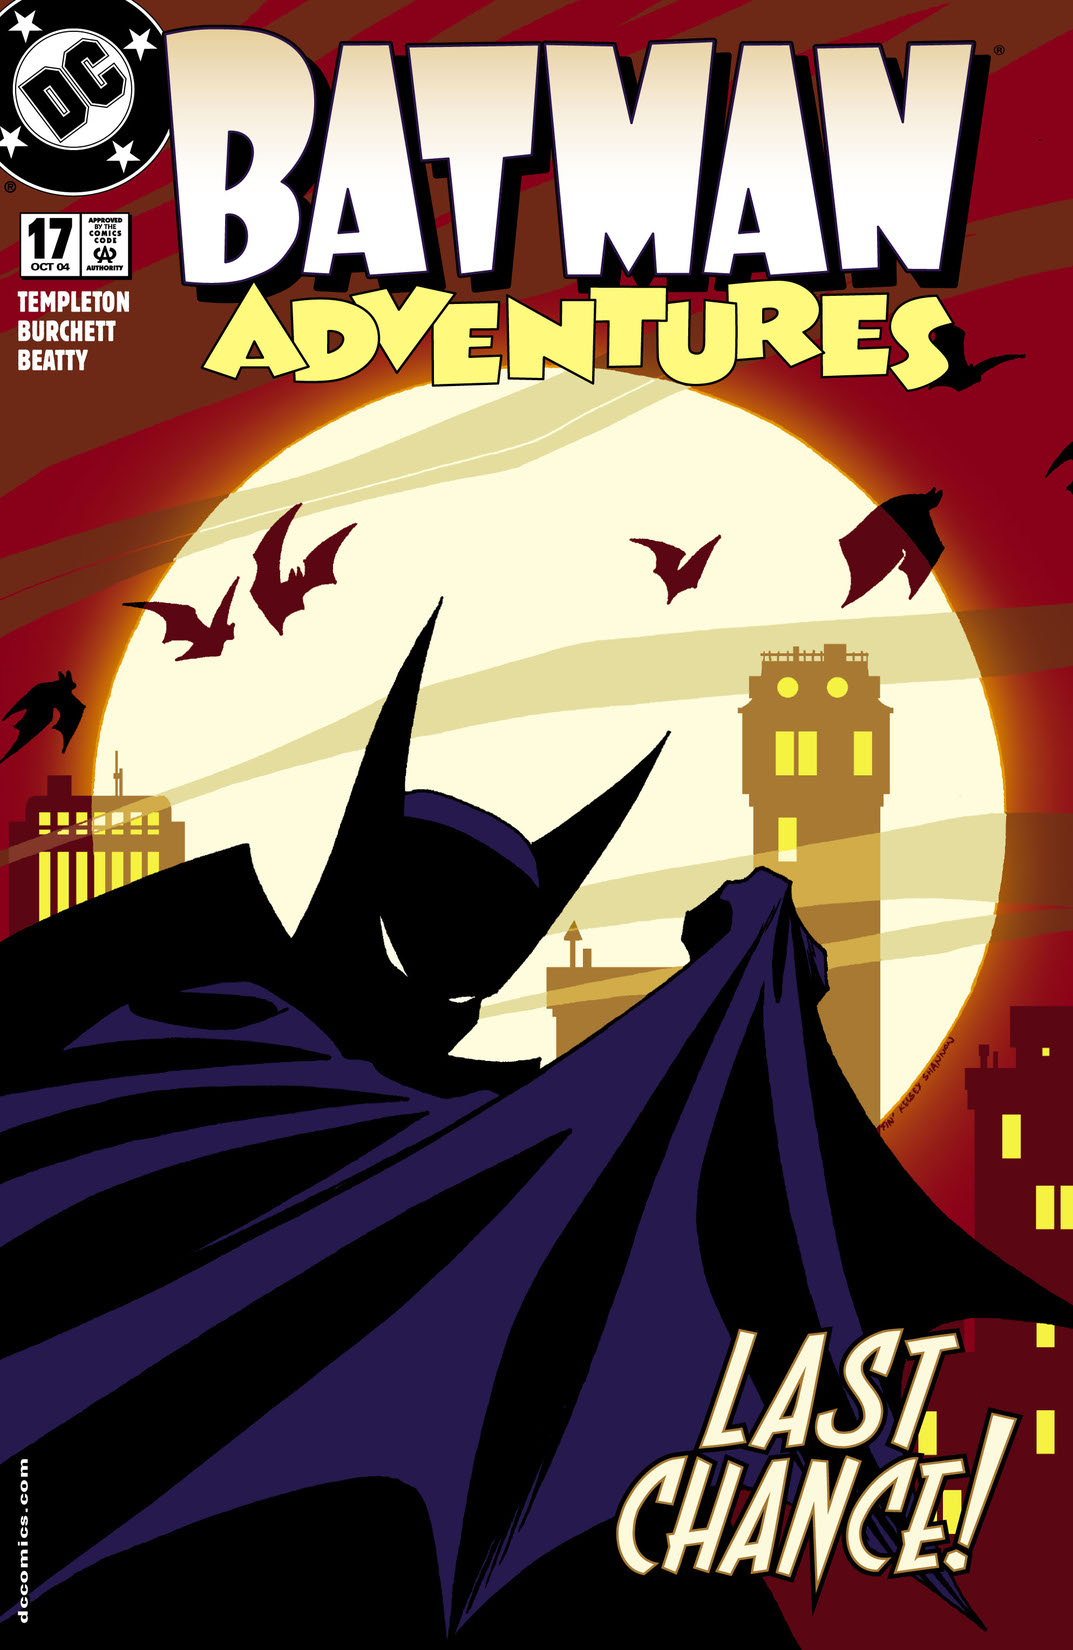 Batman Adventures #17 preview images